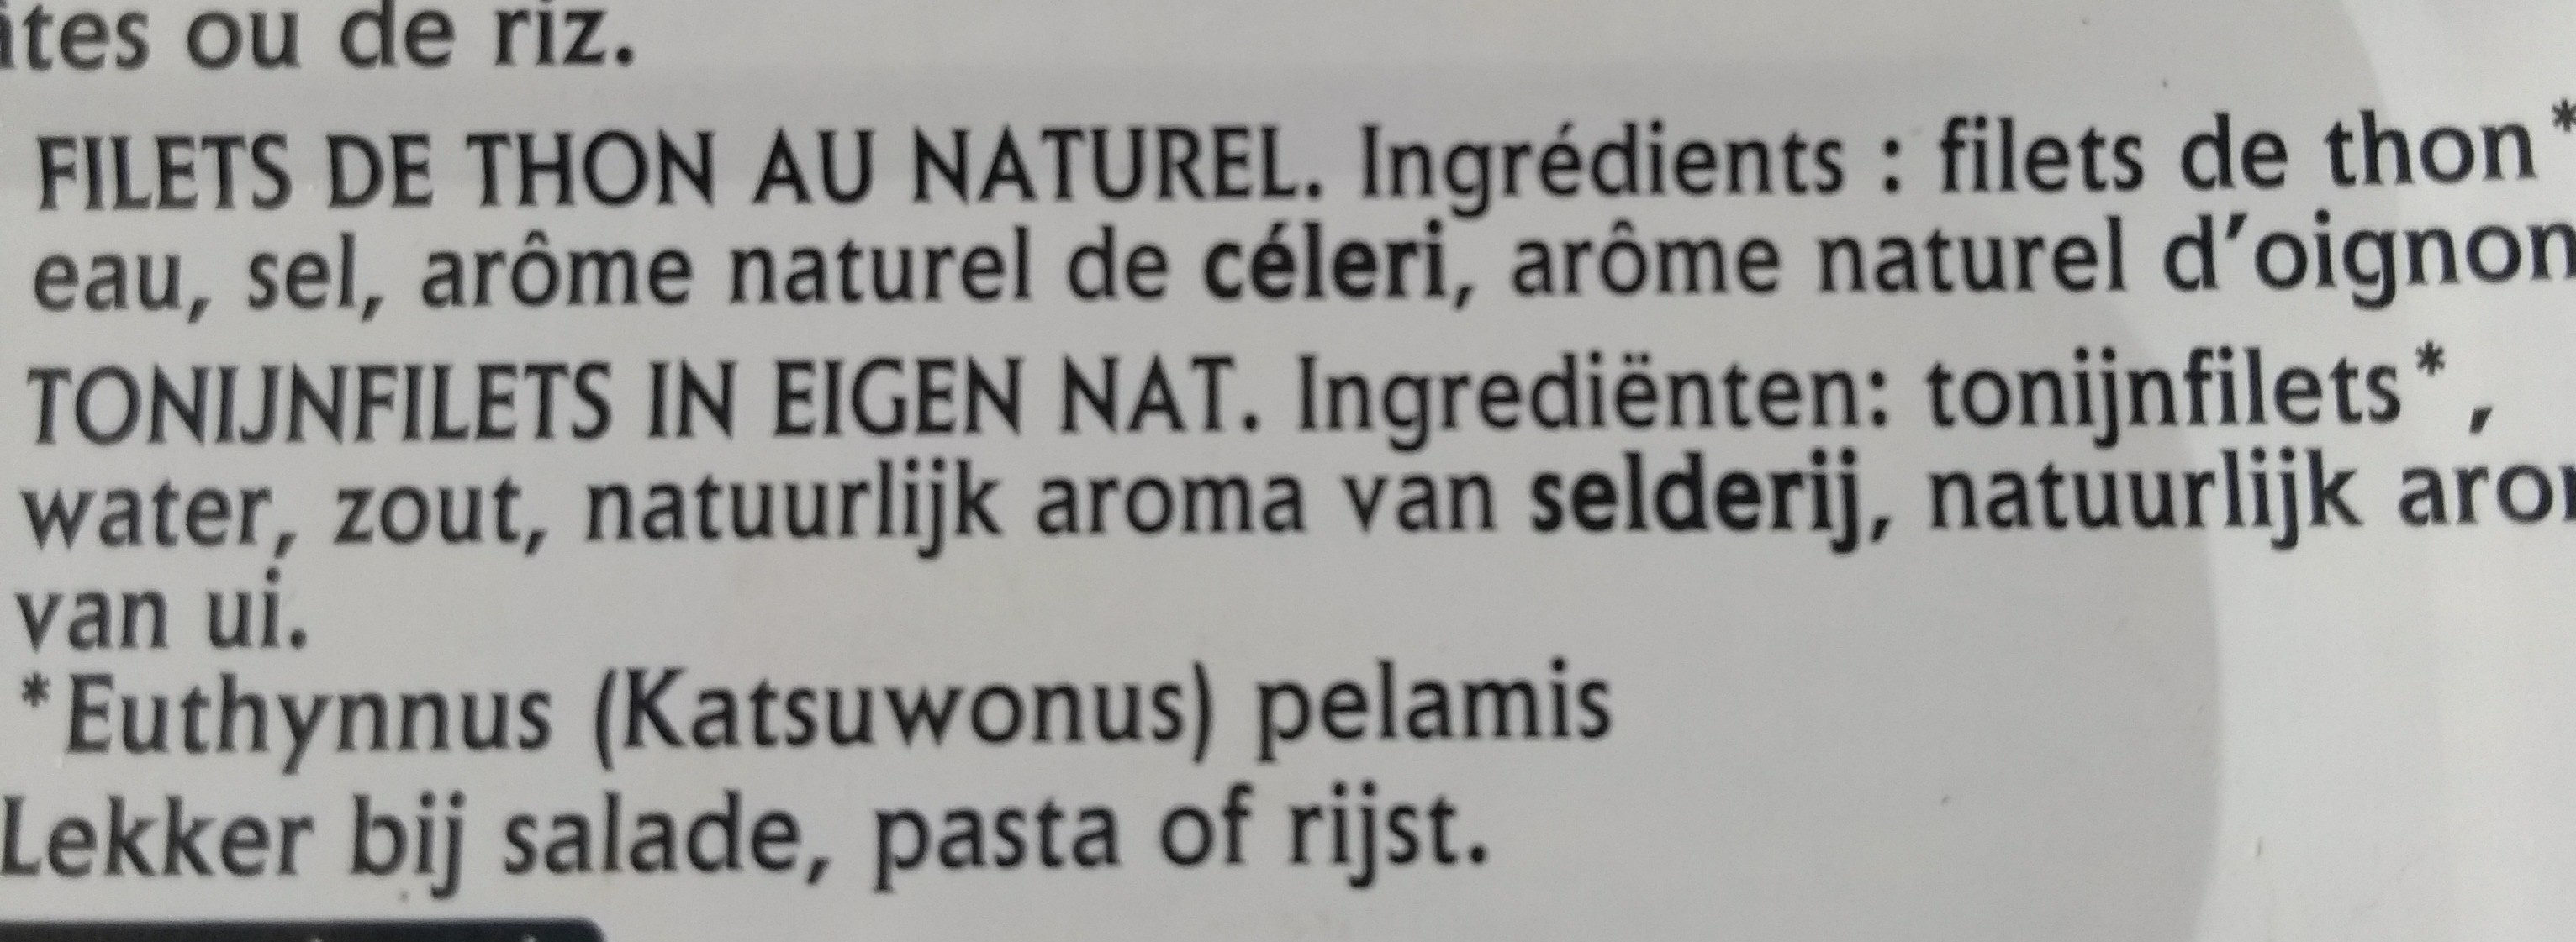 Filets de thon au naturel - Ingrédients